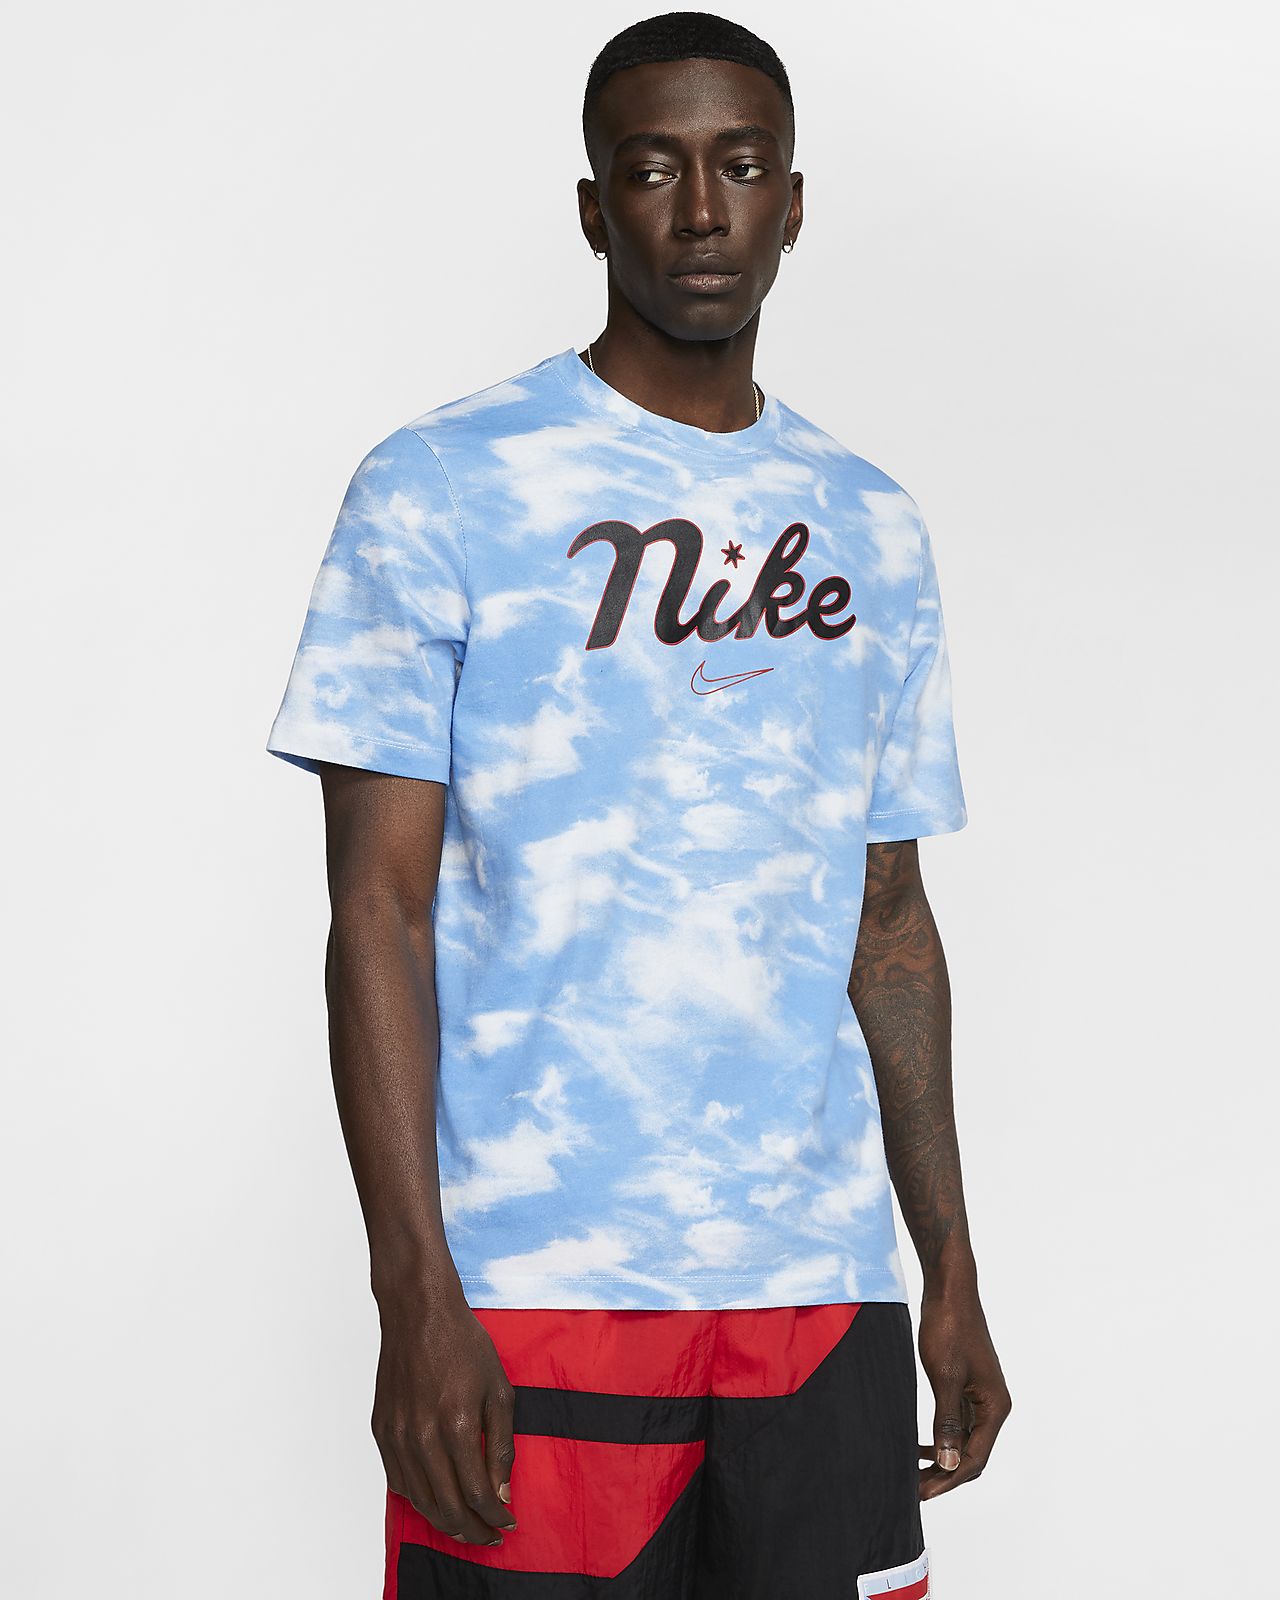 Basketball T-Shirt.Online store 